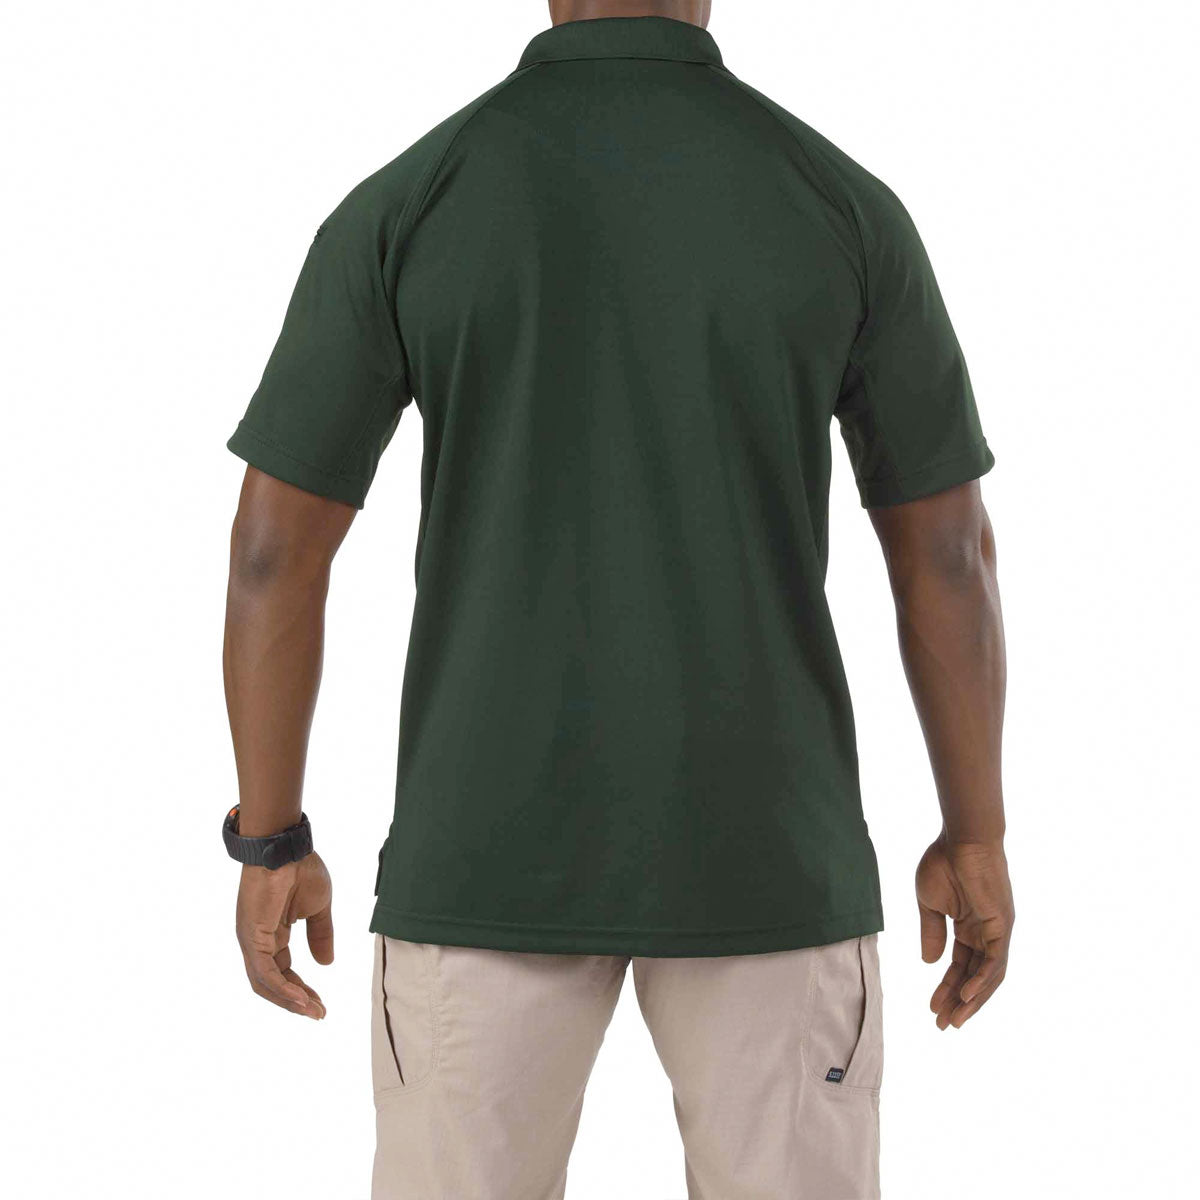 5.11 Tactical Performance Short Sleeve Polo Shirts L.E. Green Tactical Distributors Ltd New Zealand